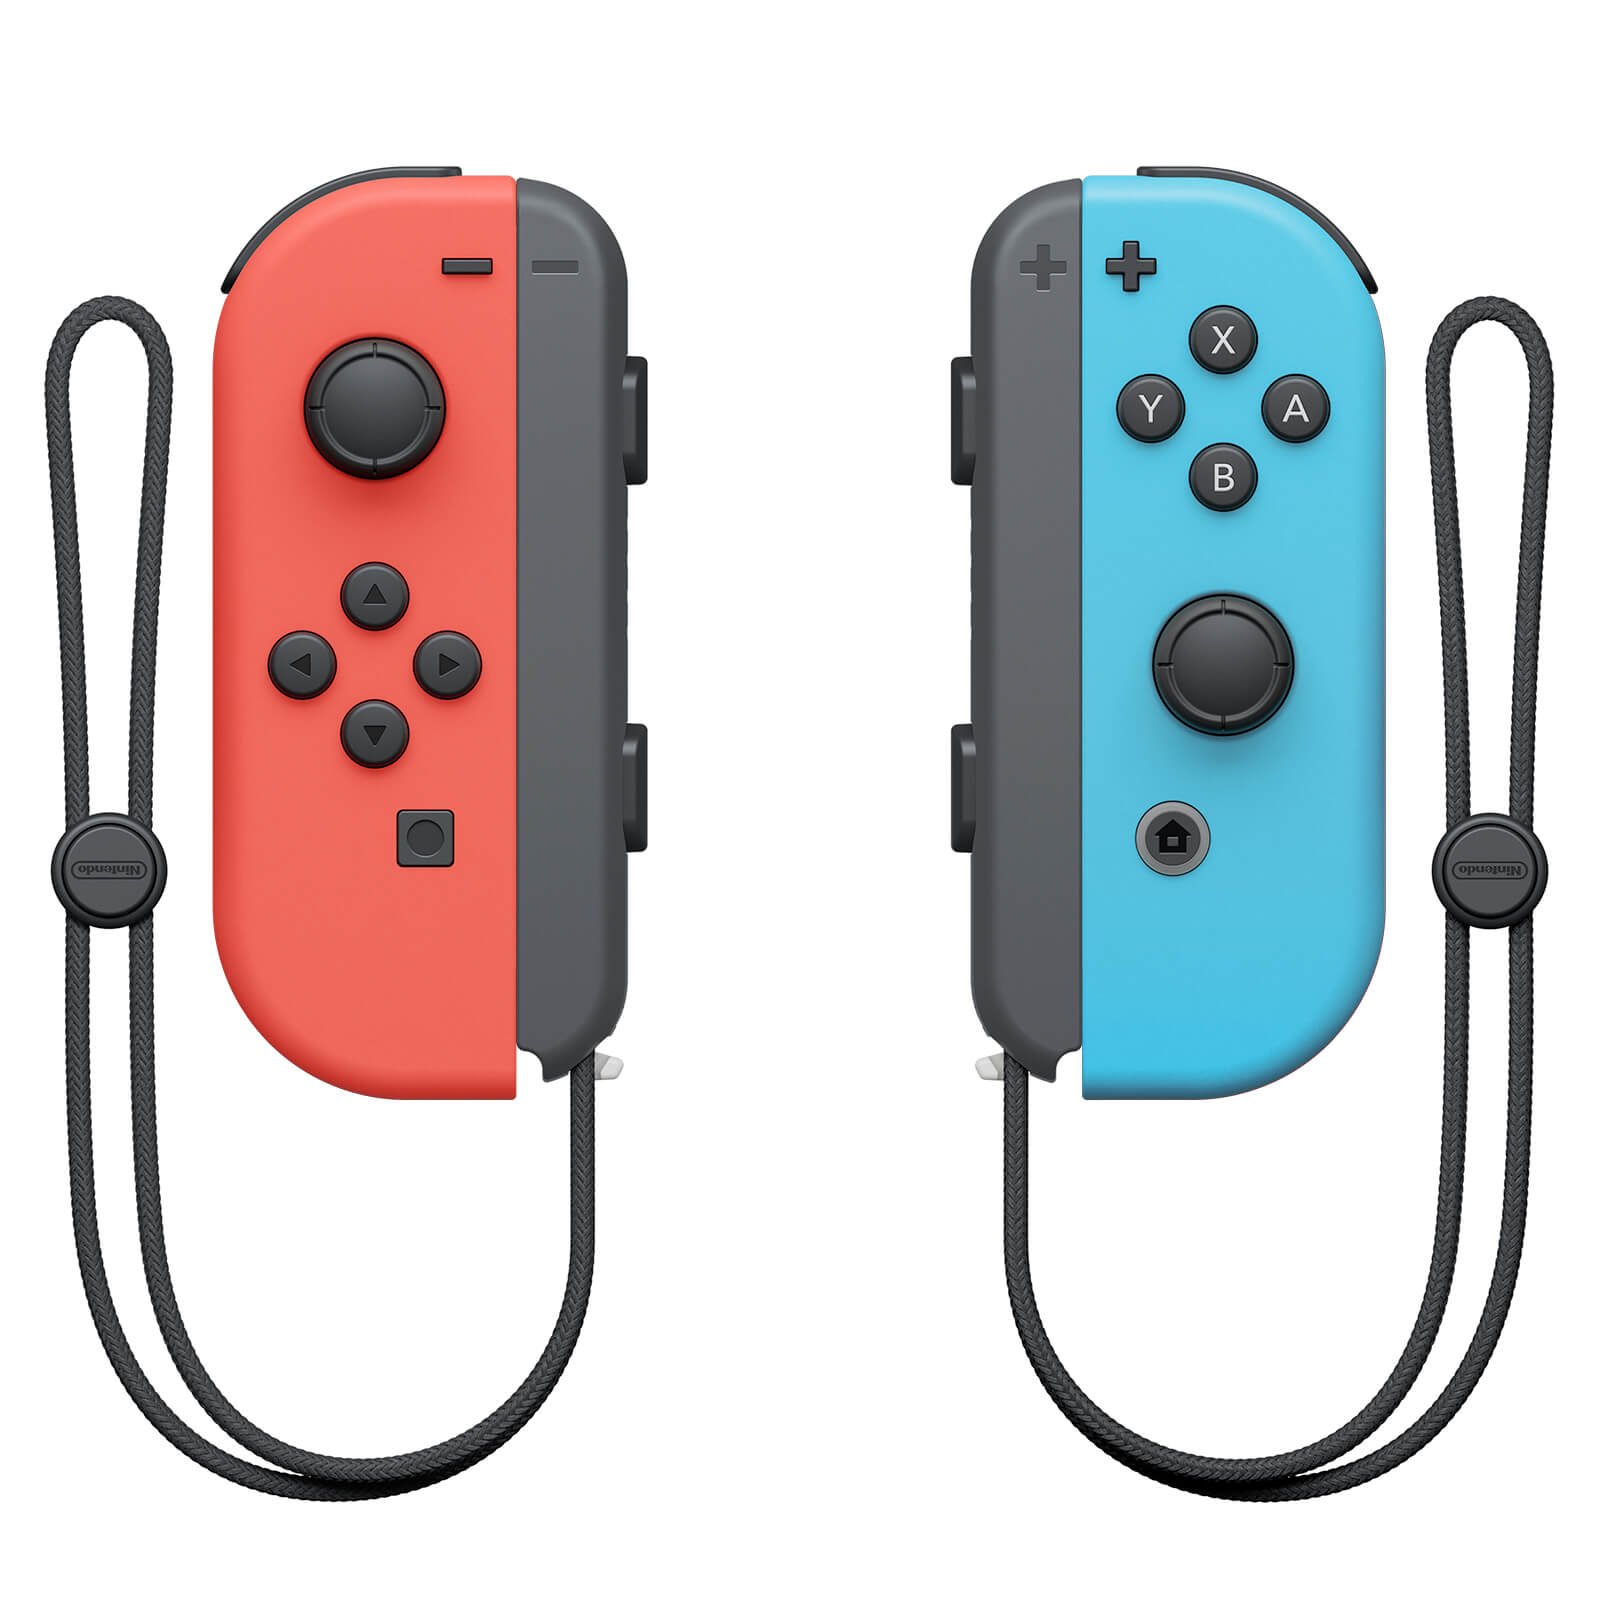 As primeiras versões do joycon esquerdo do Nintendo Switch tendem a apresentar drifts, travando o direcional em uma direção